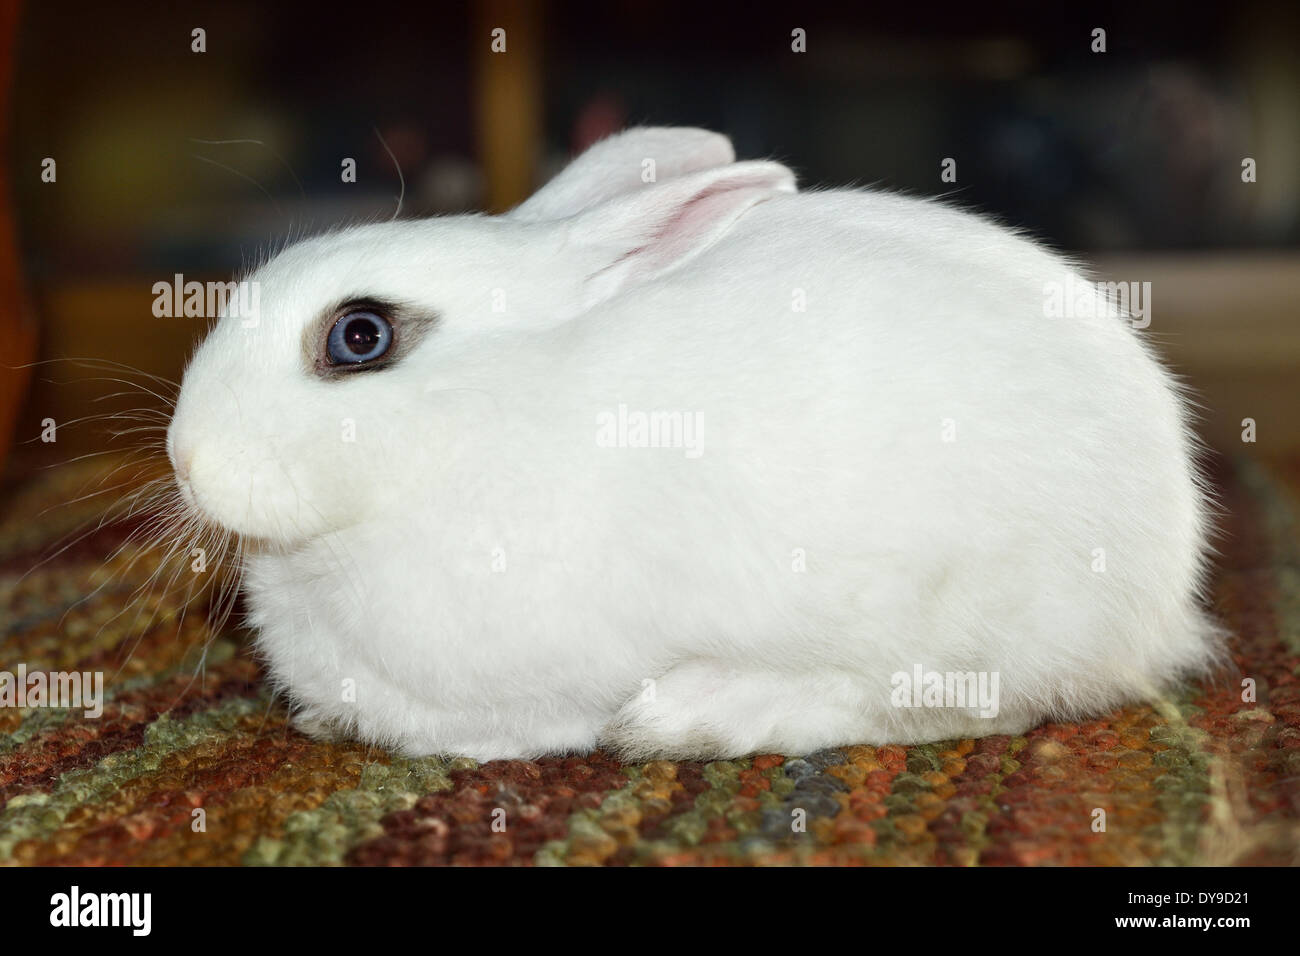 Enano conejo polaco en cuclillas sobre la alfombra. Foto de stock